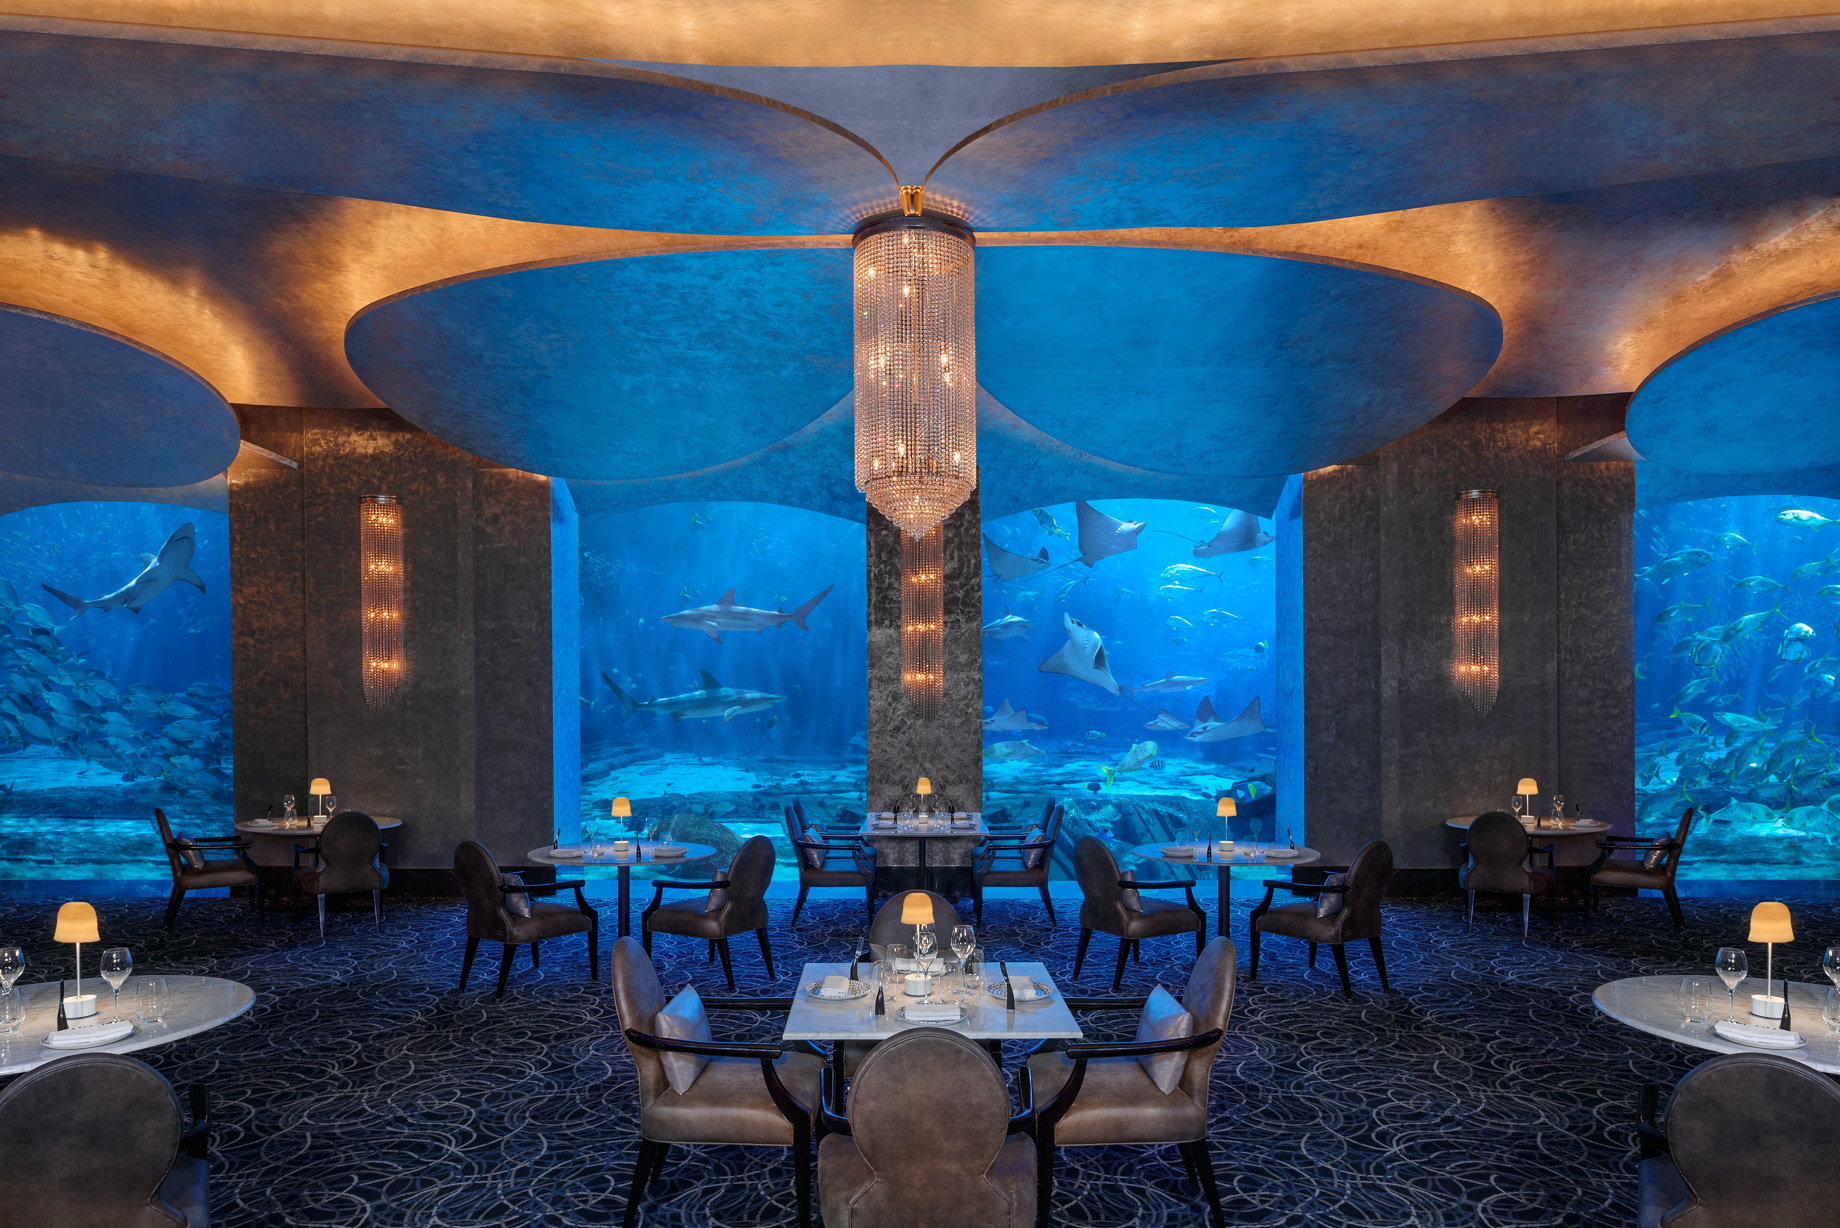 Atlantis The Palm Resort – Crescent Rd, Dubai, UAE – Ossiano Restaurant Underwater Aquarium View